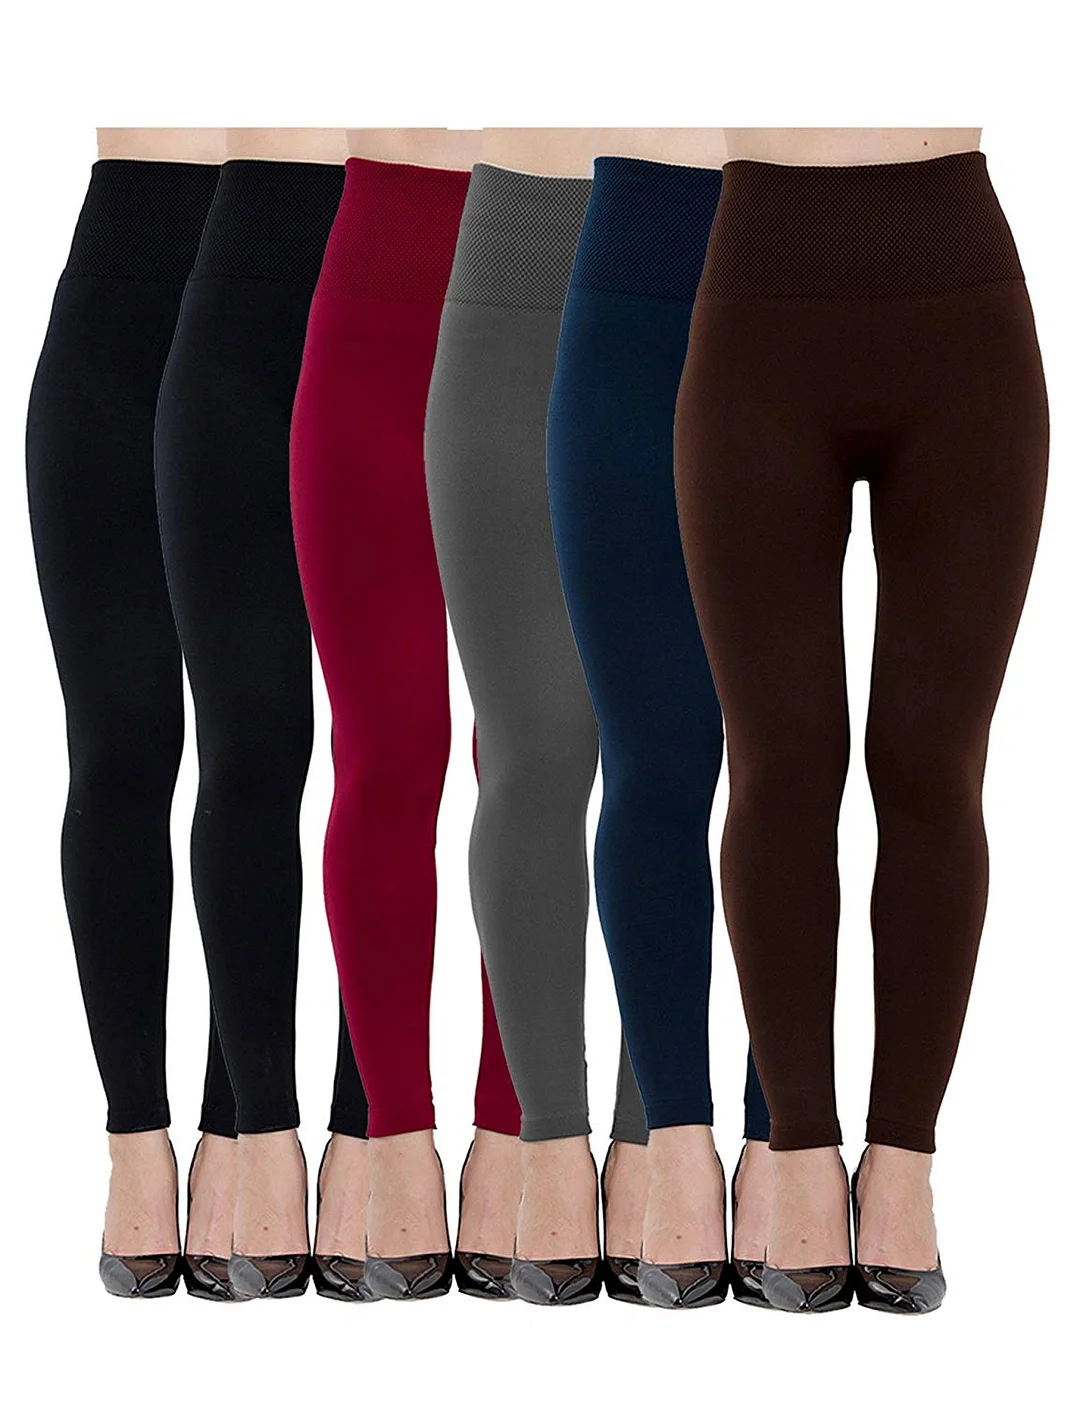 Women's Fleece Lined Leggings High Waist Soft Warm Winter Pants Slim for Women One Size